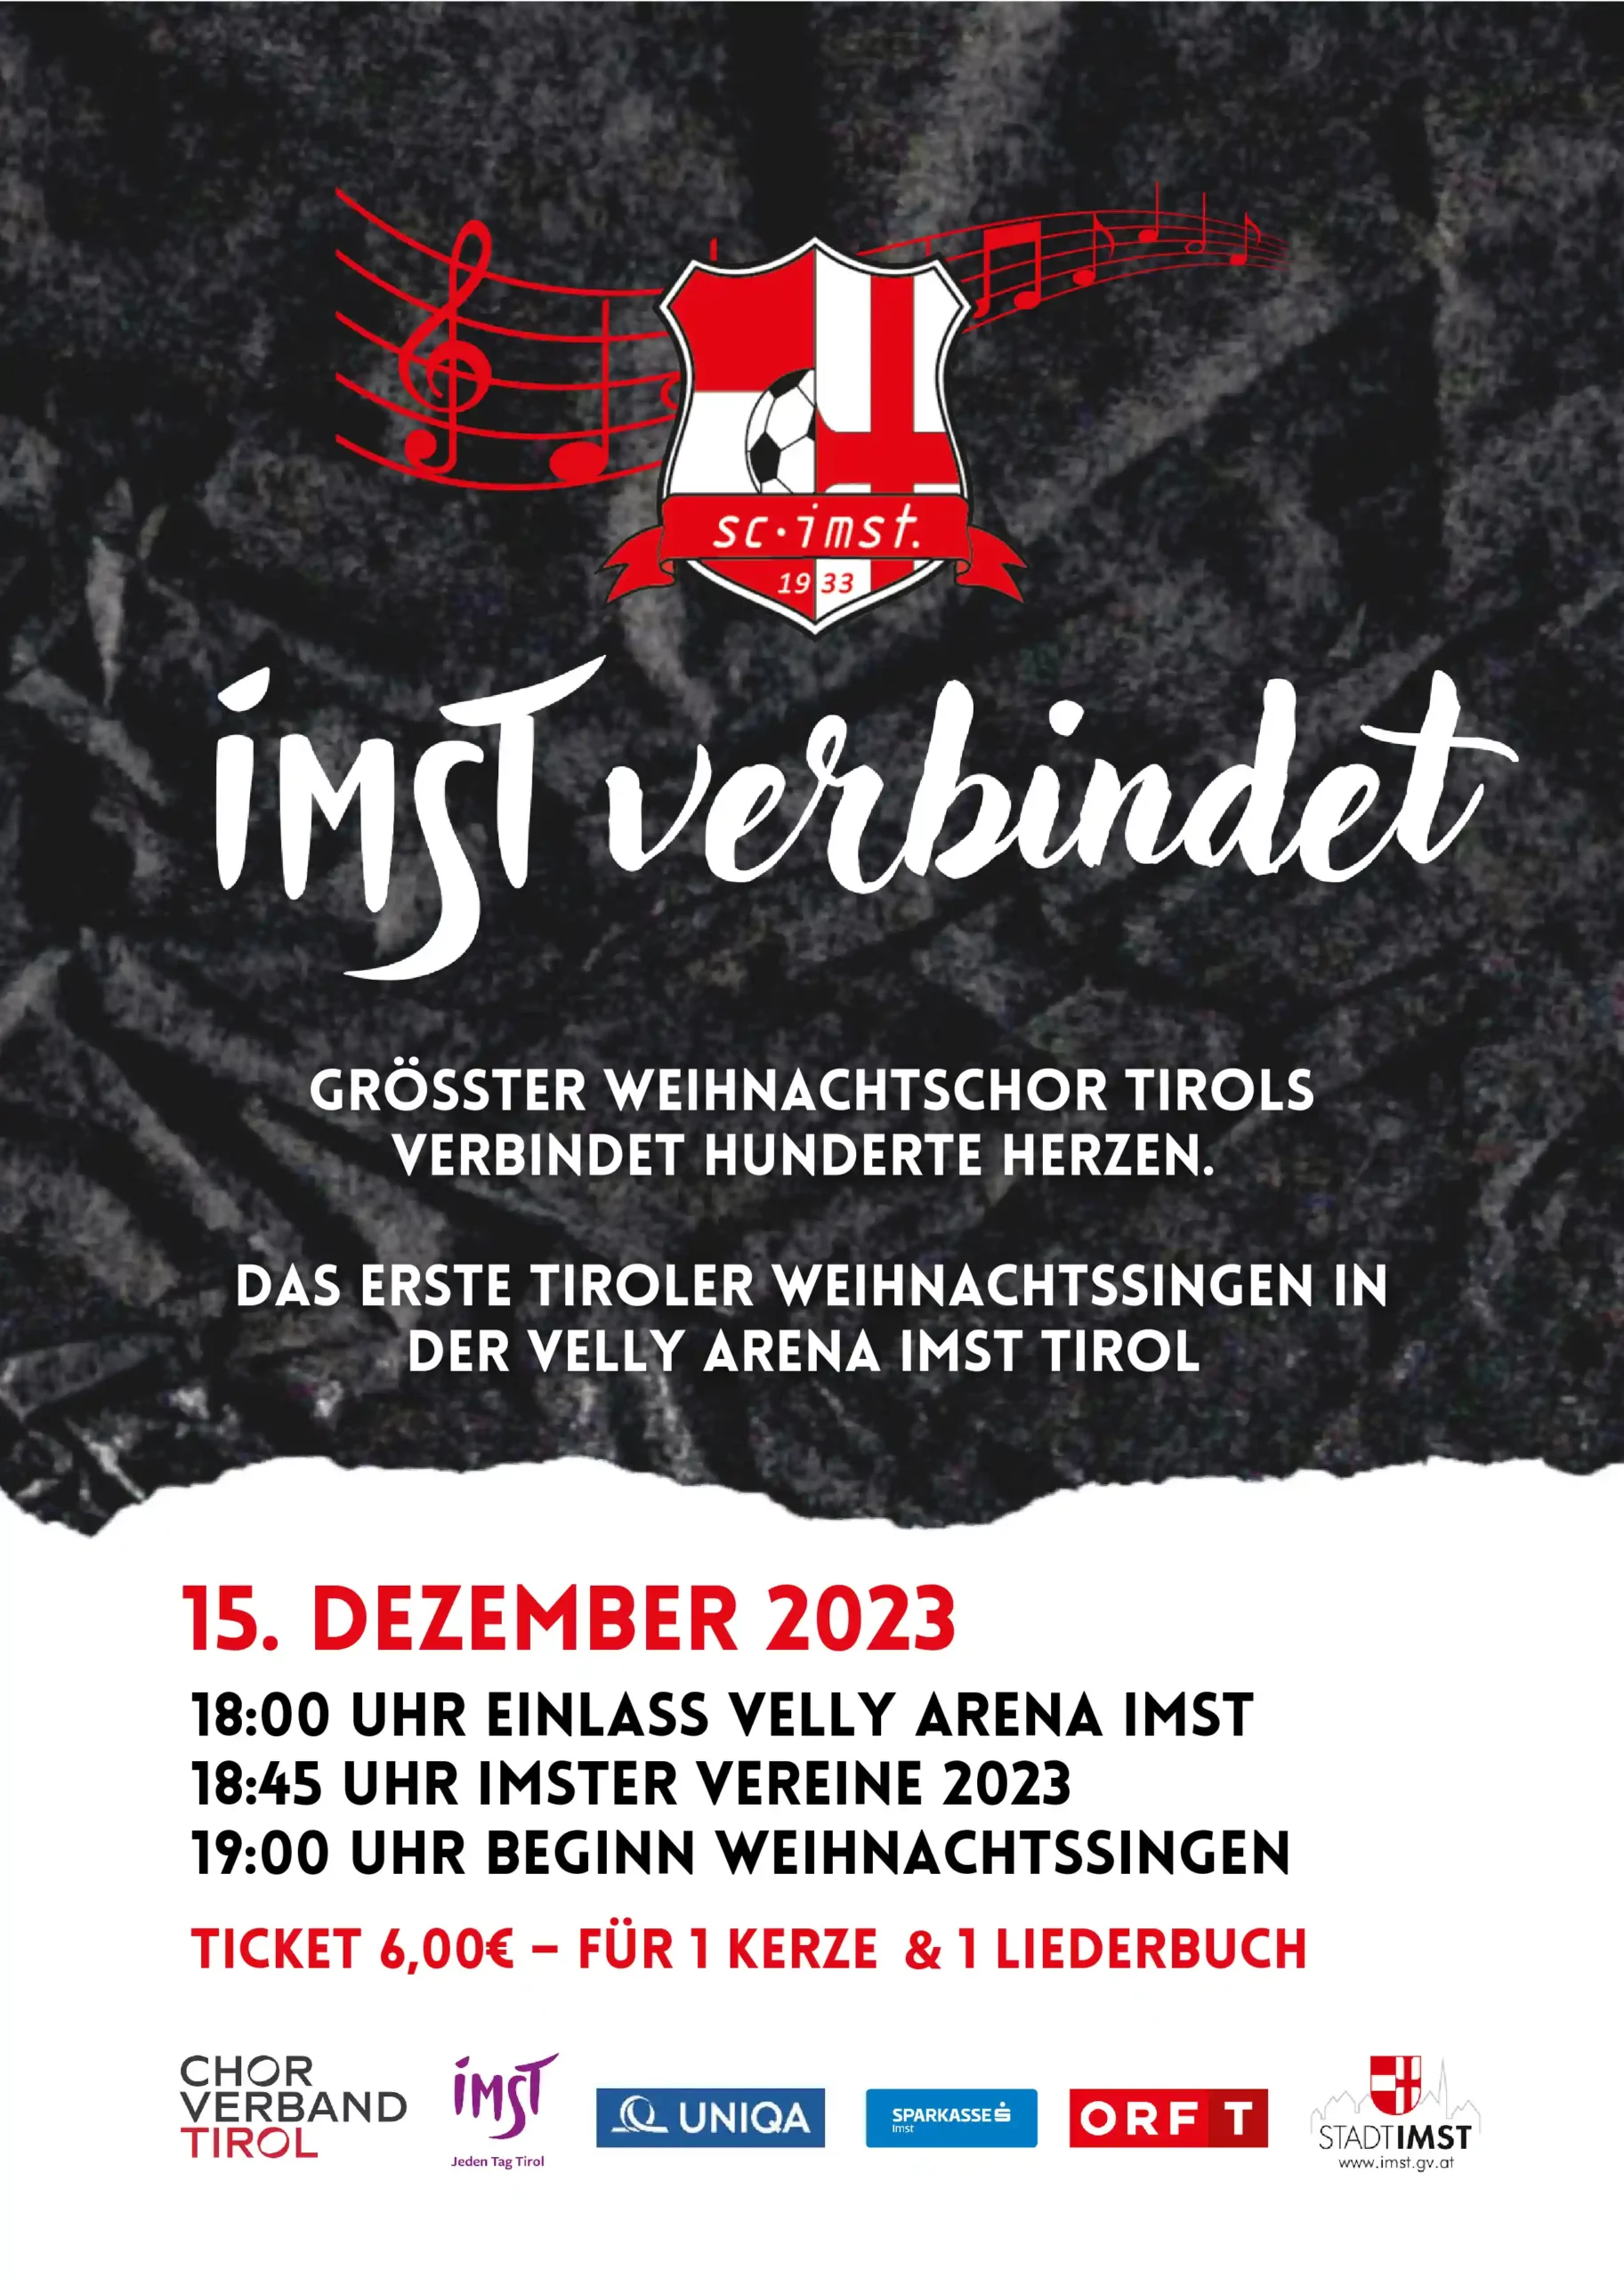 Das erste Tiroler Weihnachtssingen in der Velly Arena Imst Tirol, anlässlich des 90 Jahr Jubiläum des SC Sparkasse Imst 1933!